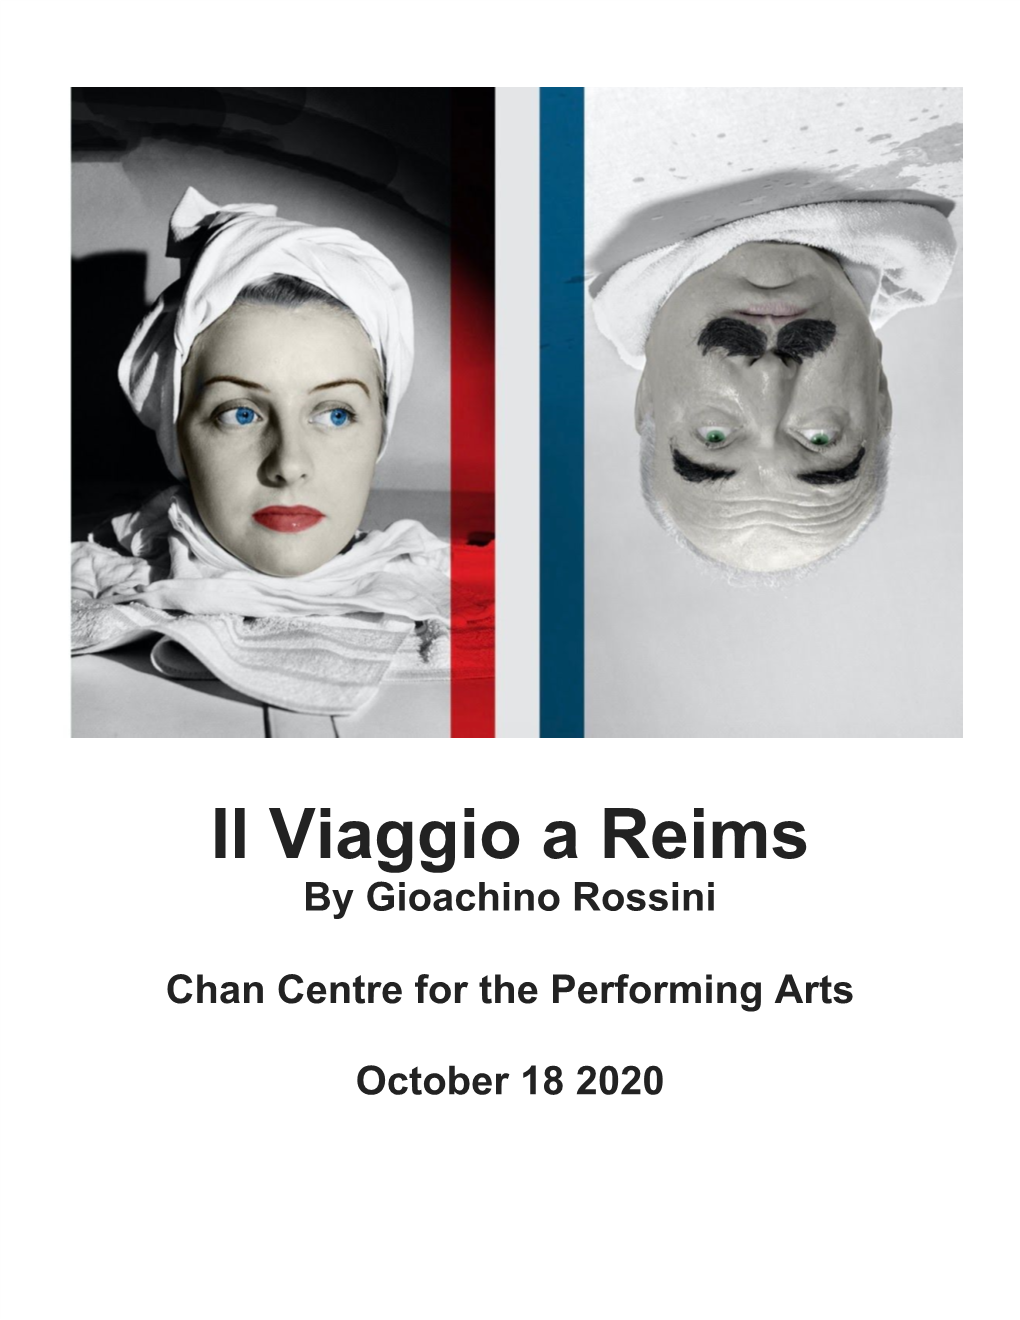 Il Viaggio a Reims by Gioachino Rossini